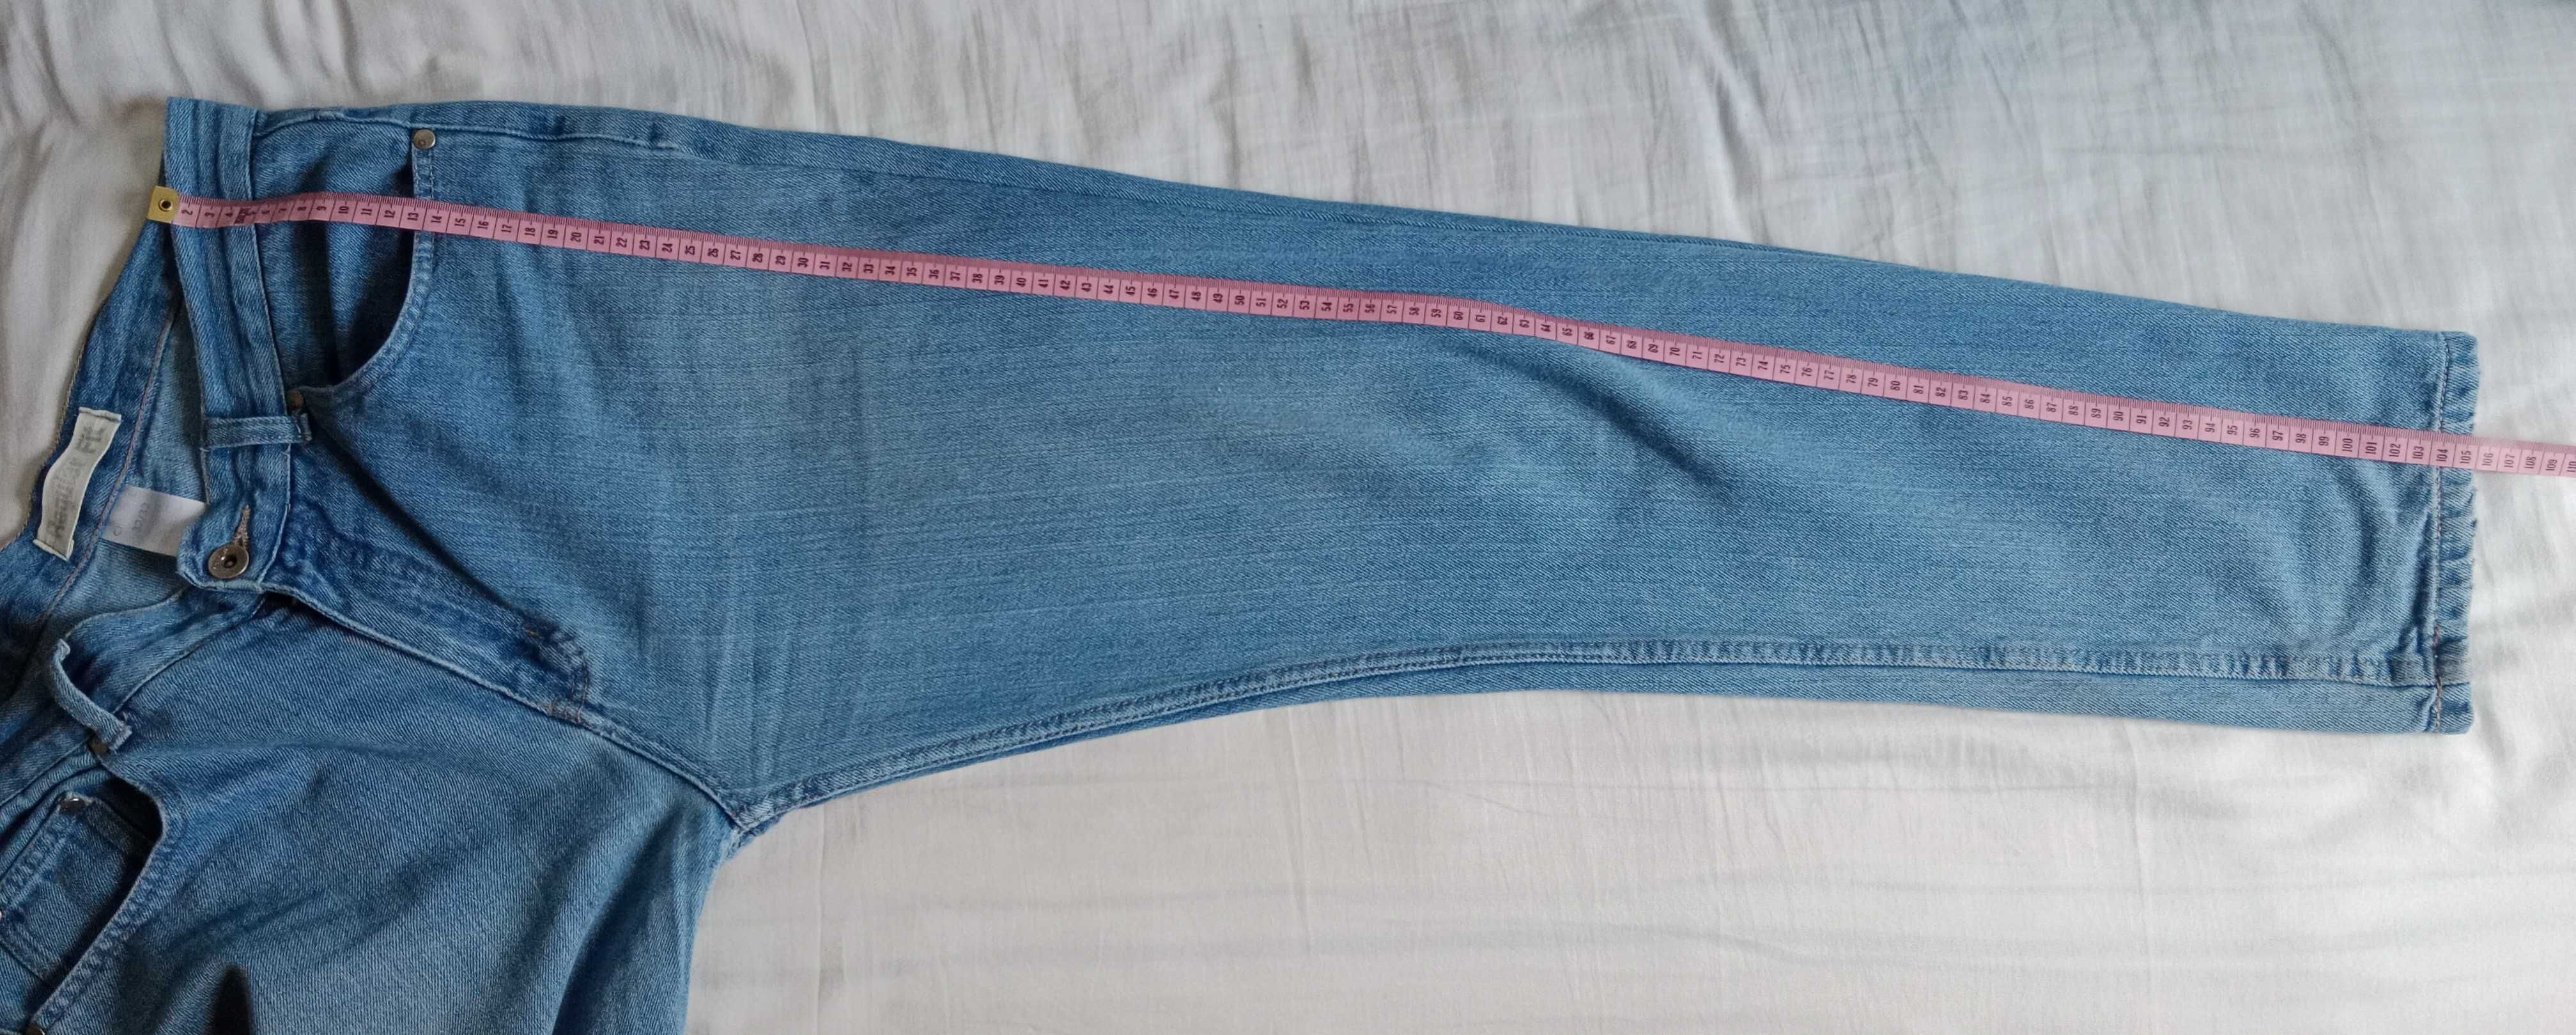 Spodnie męskie, jeans, Cherokee, Rozmiar 32 × 32.